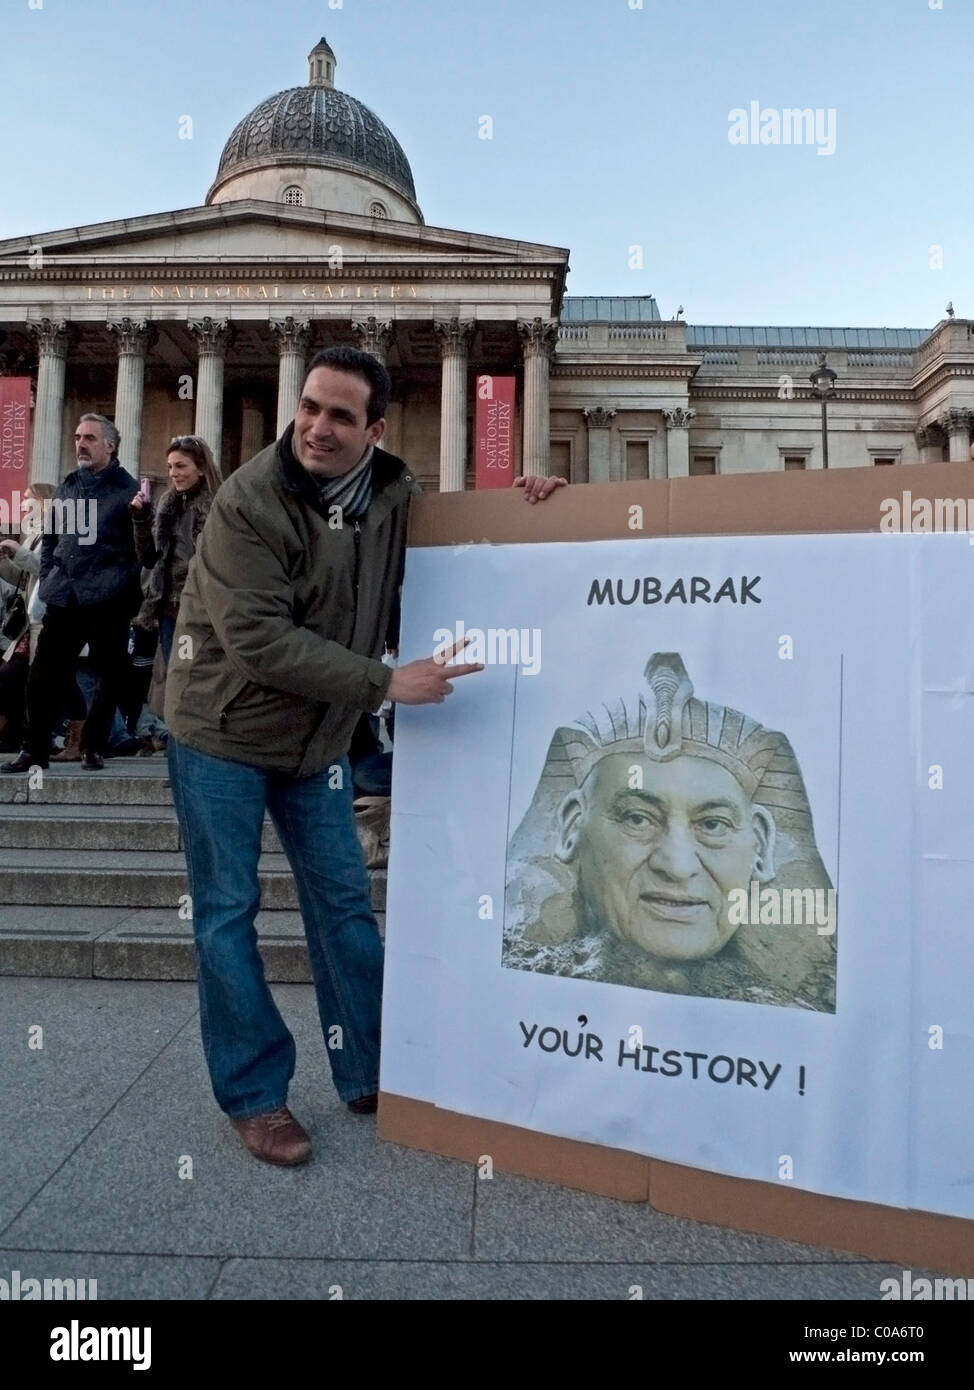 Un égyptien et affiche célébrant la disparition du Président Moubarak, en face de la National Gallery de Londres 12 Février 2011 Banque D'Images